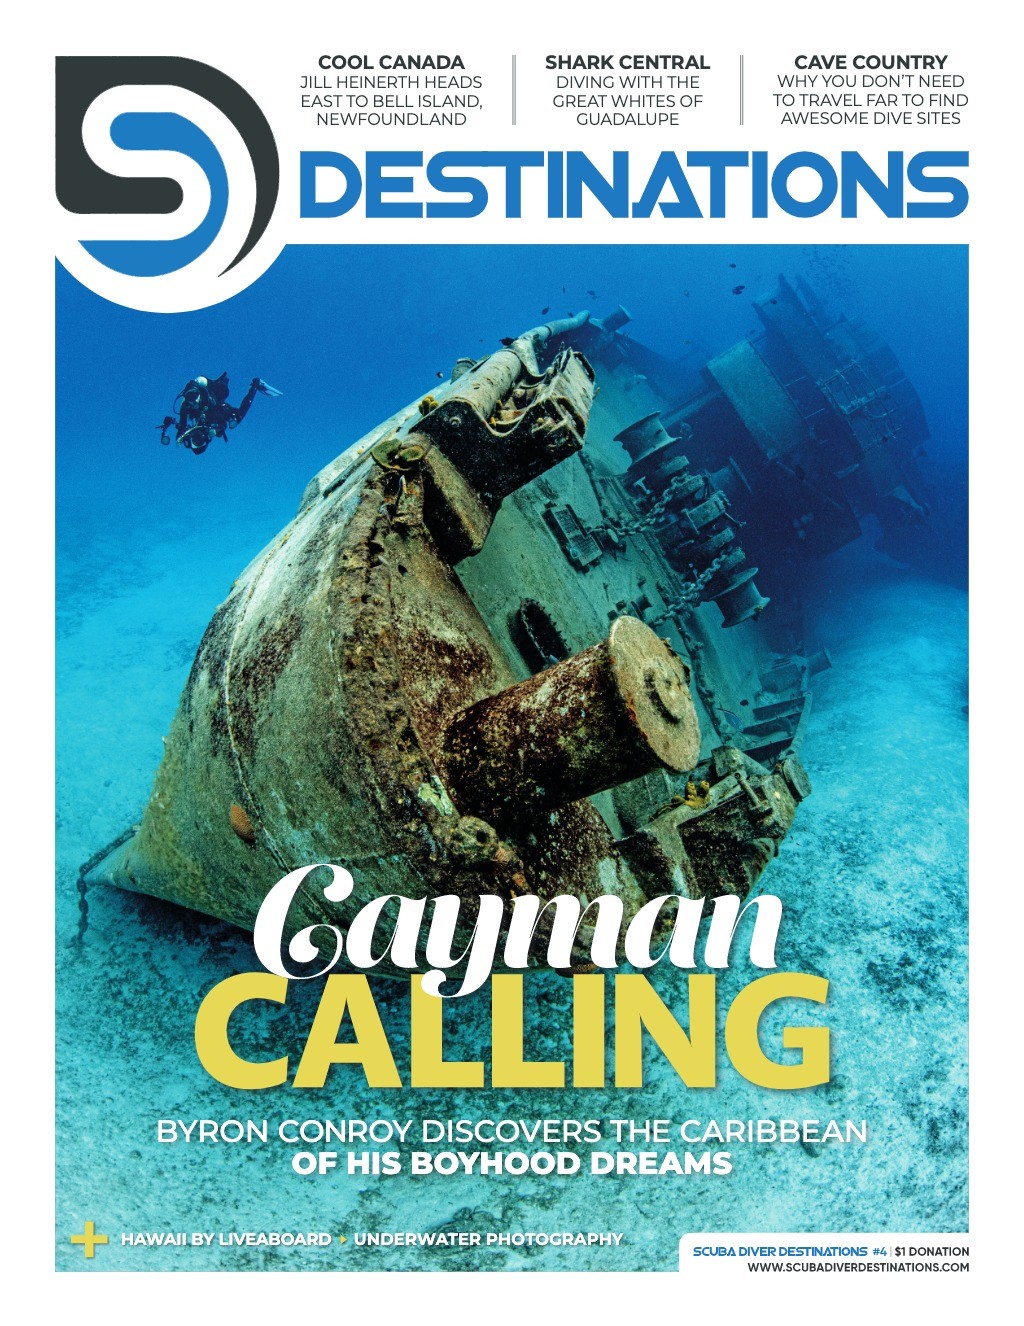 Scuba Diver Destinations #4